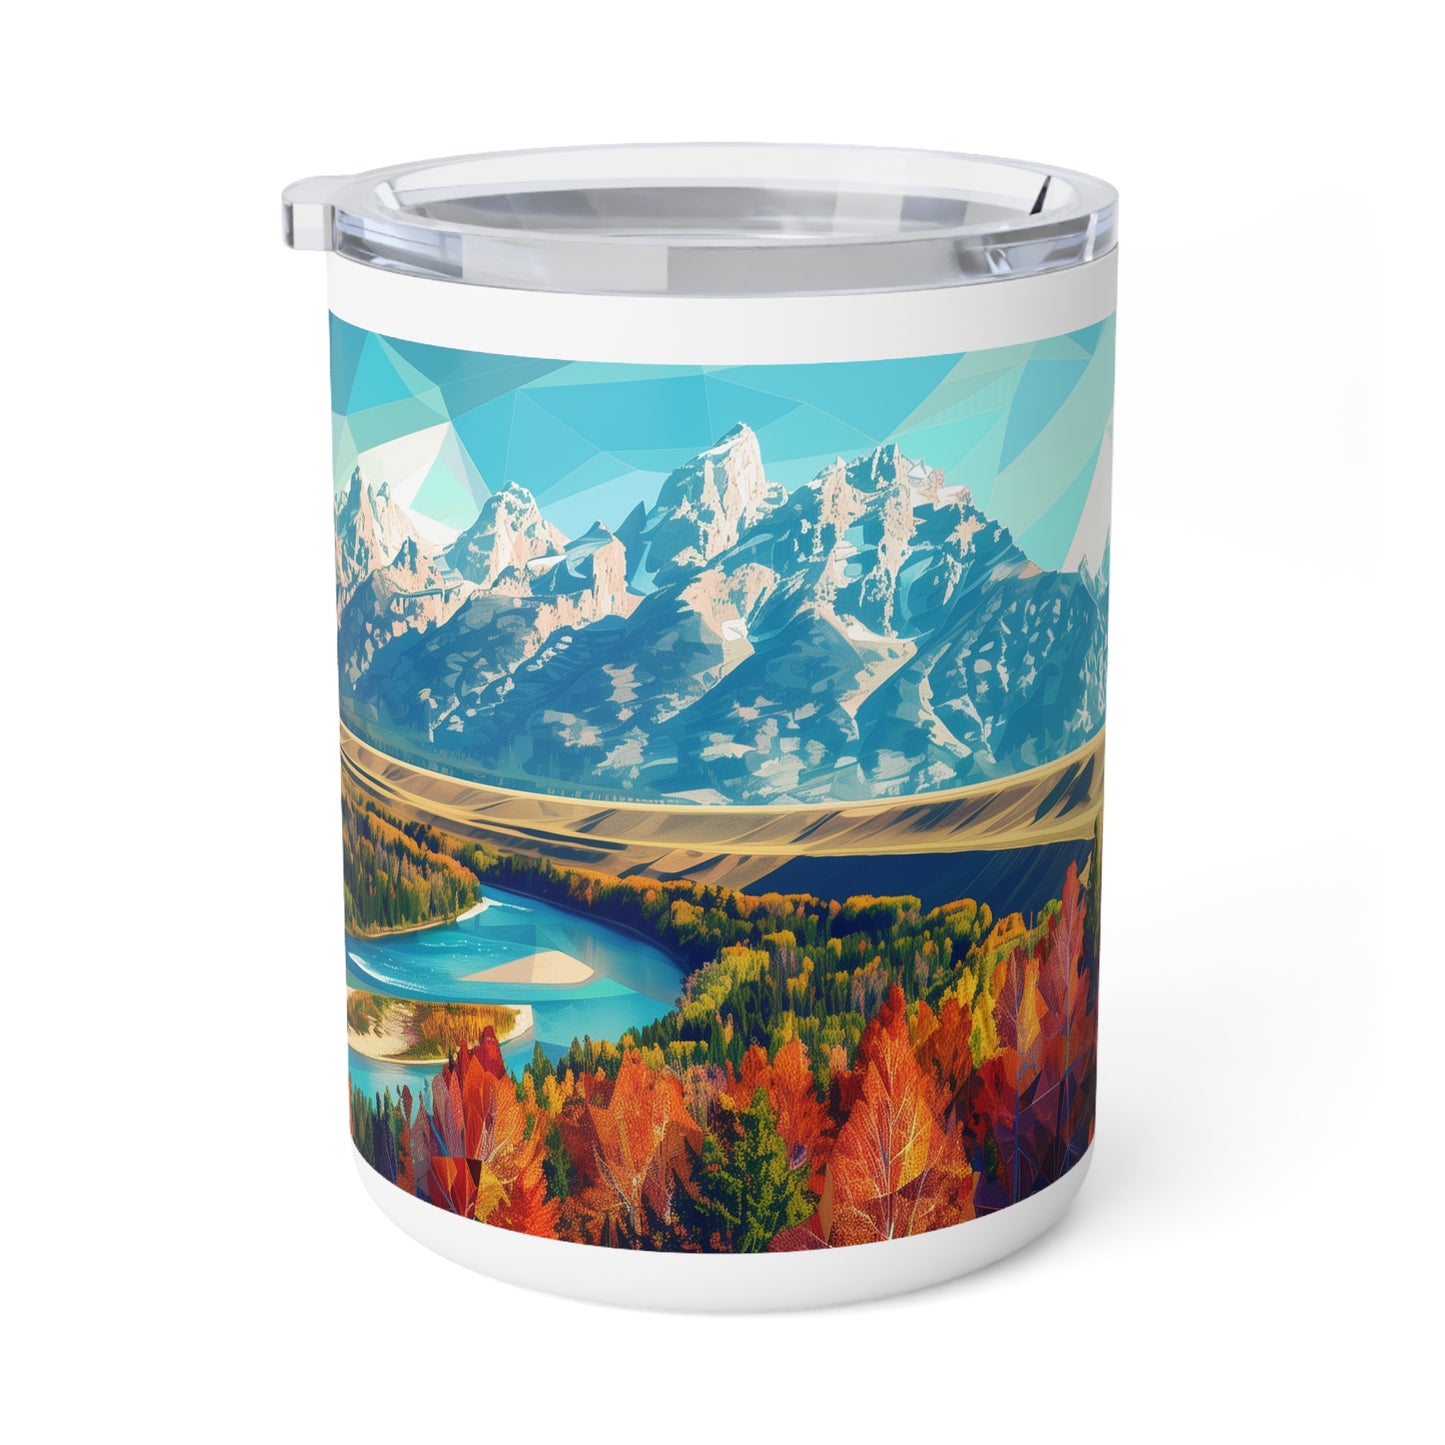 Insulated Coffee Mug with Grand Teton National Park Design, 10 oz